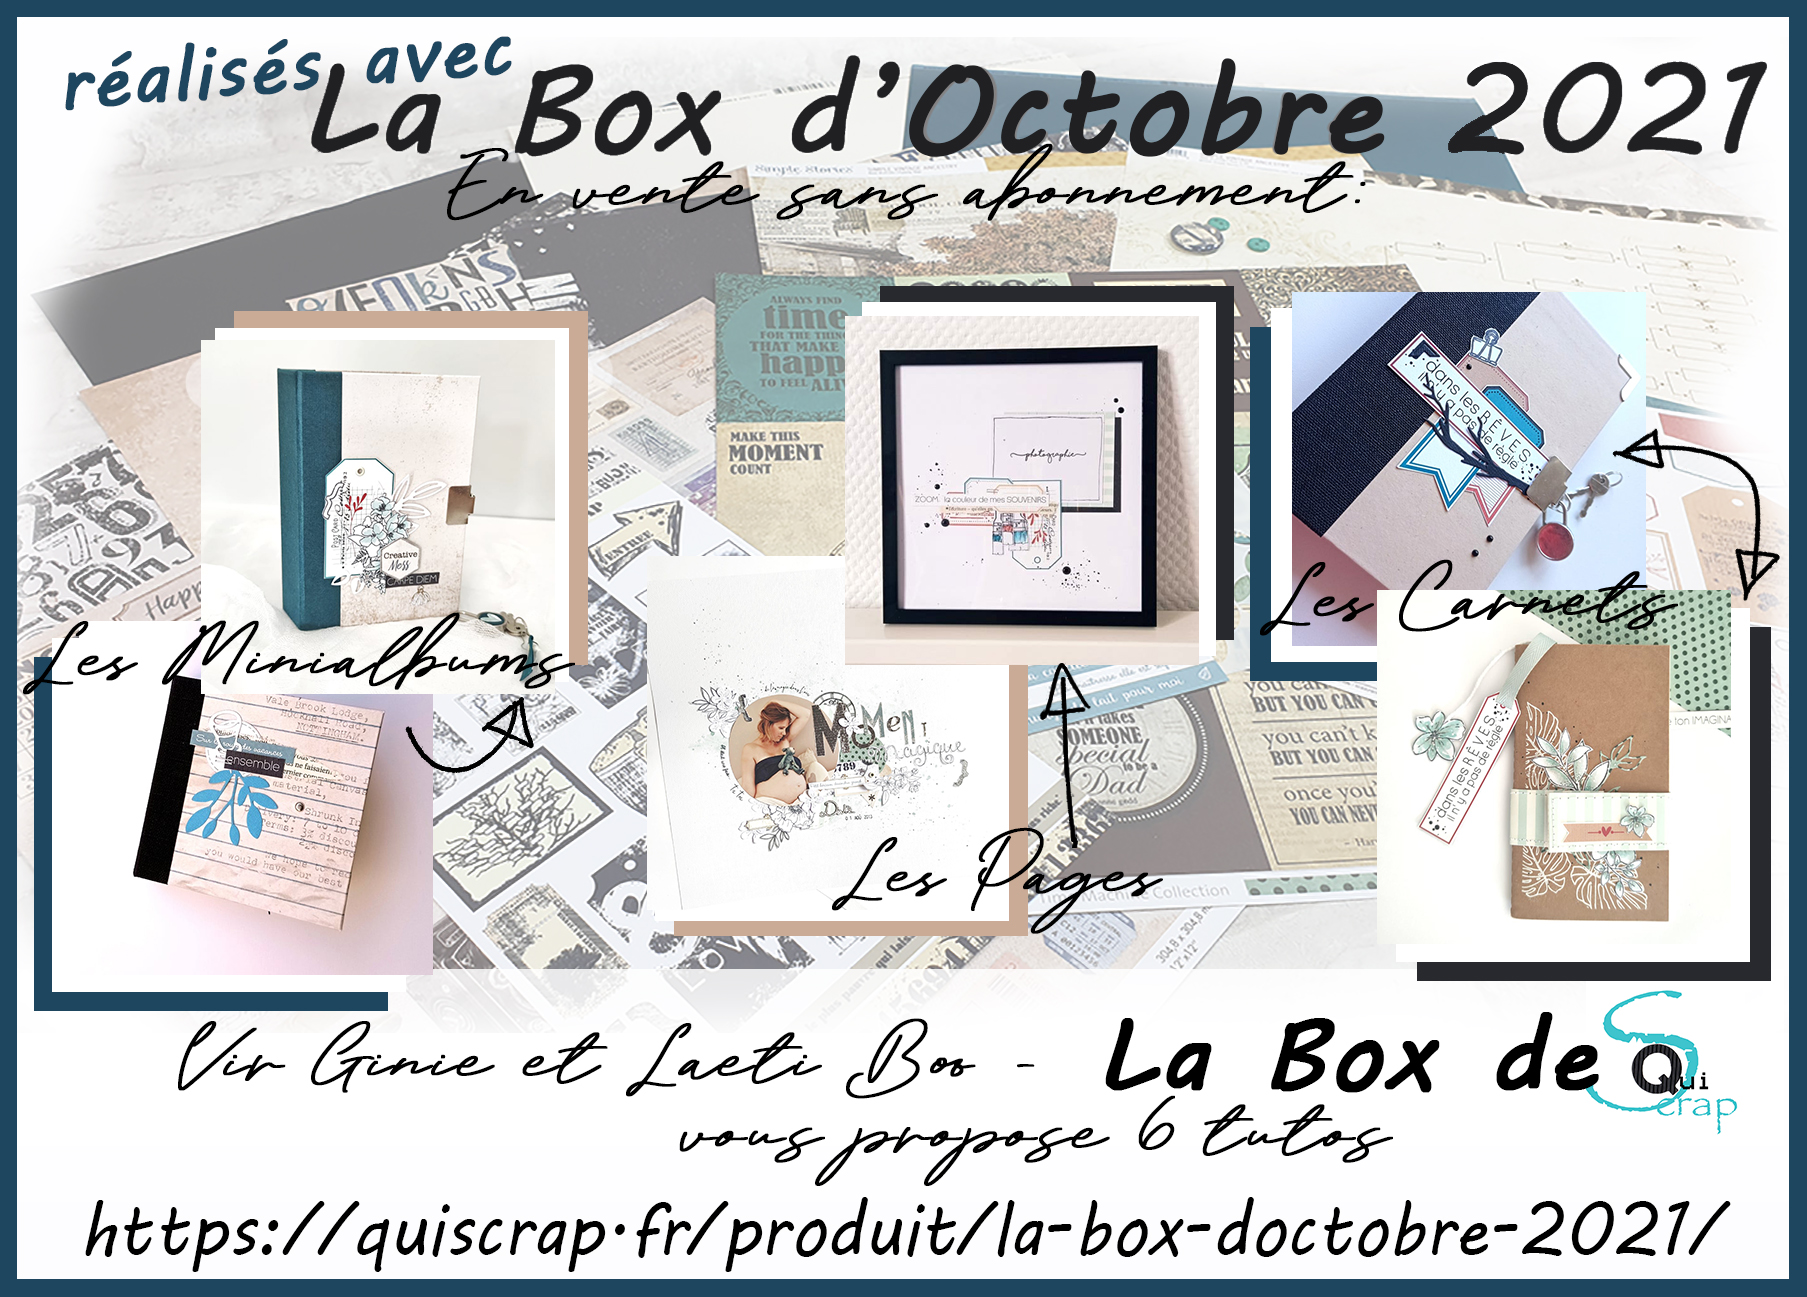 You are currently viewing ***Récapitulatif La Box d’Octobre 2021 par Vir Ginie et Laeti Boo***